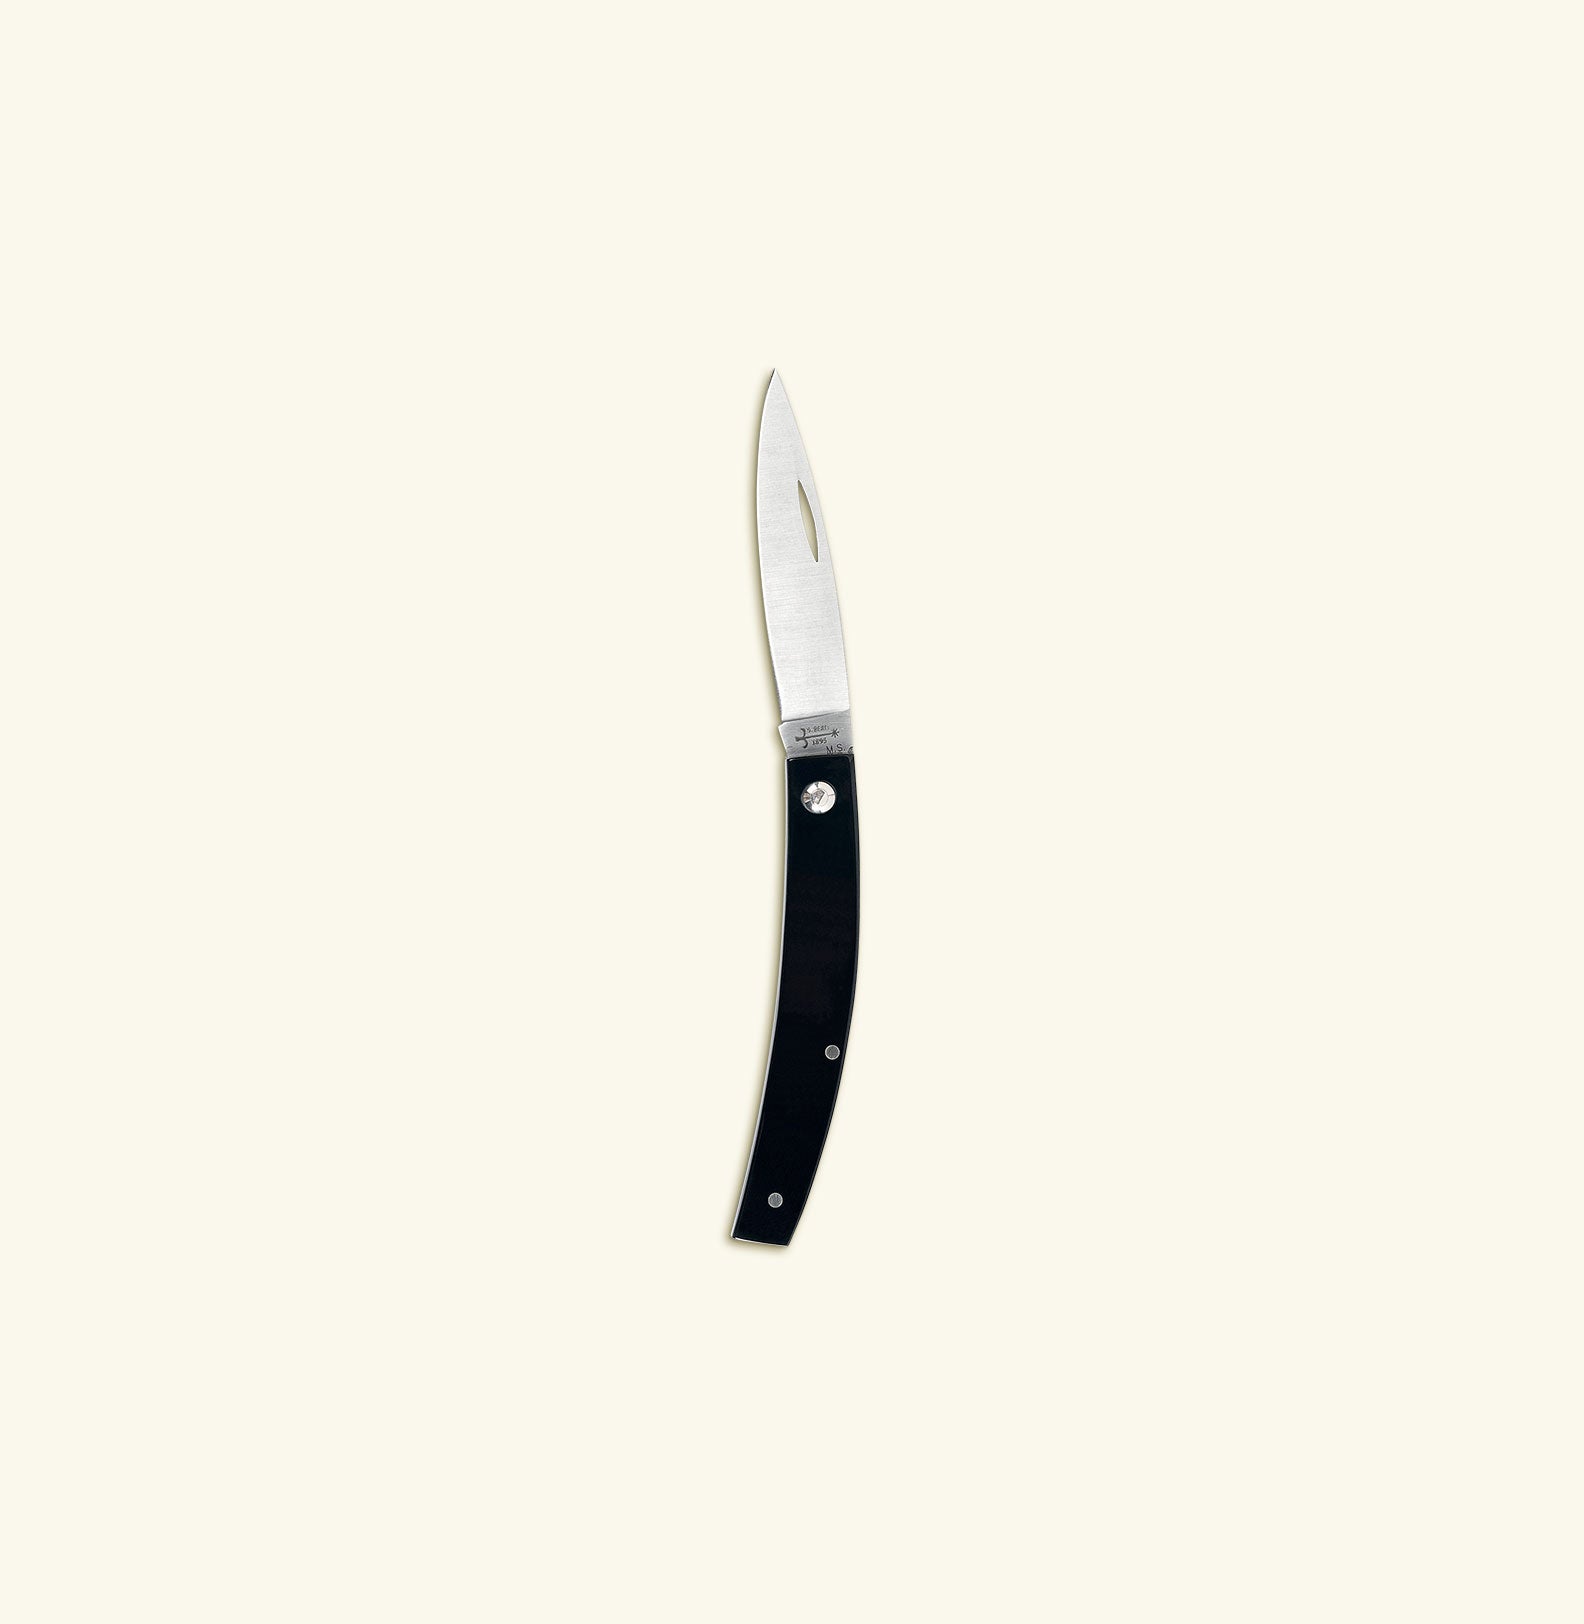 Berti knife - Gobbo Fratelli d'Italia